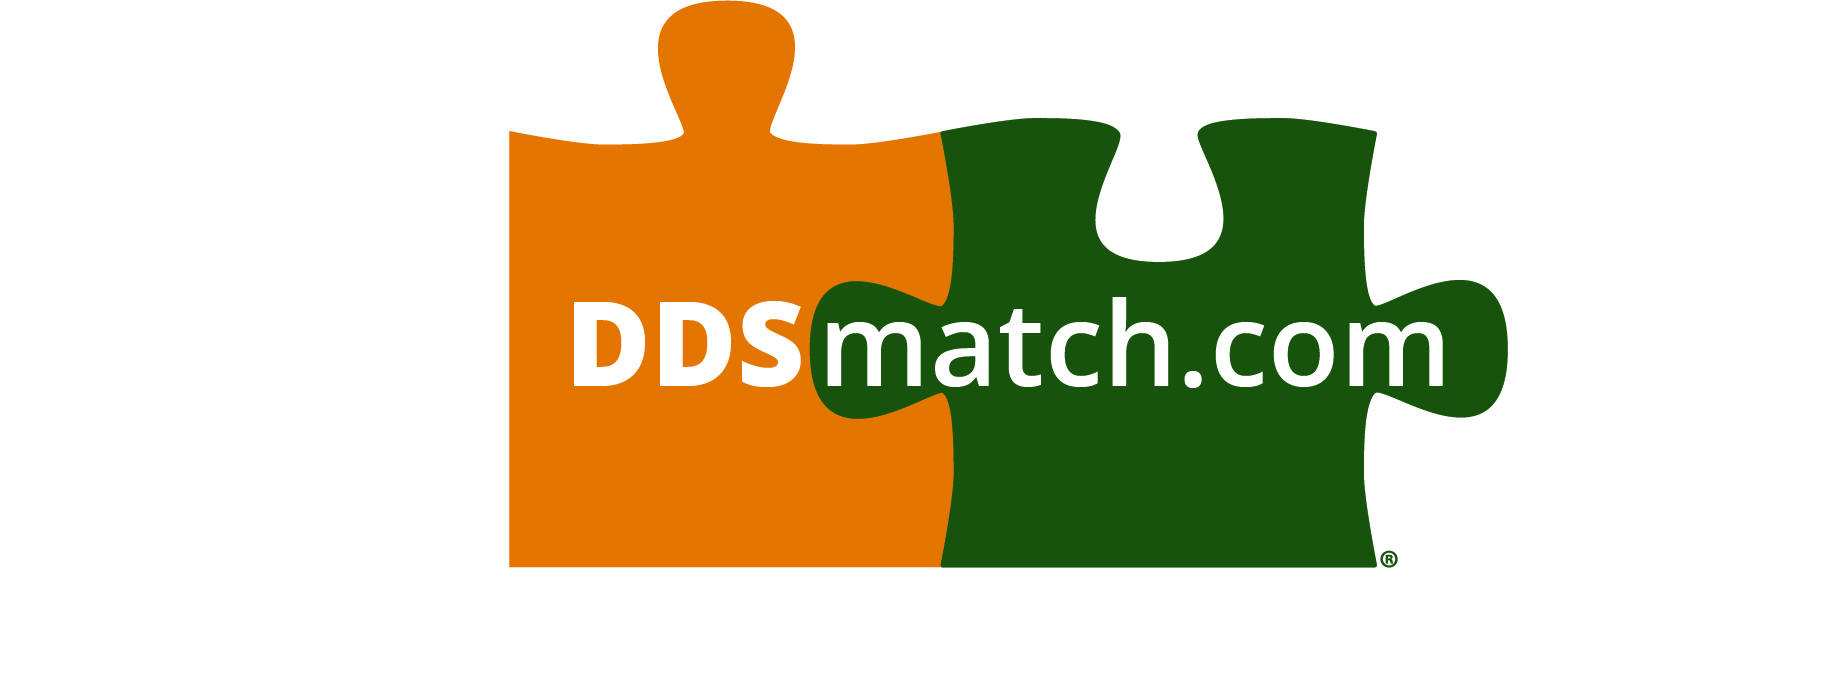 ddsmatch.com - Stephen Beaudet Logo